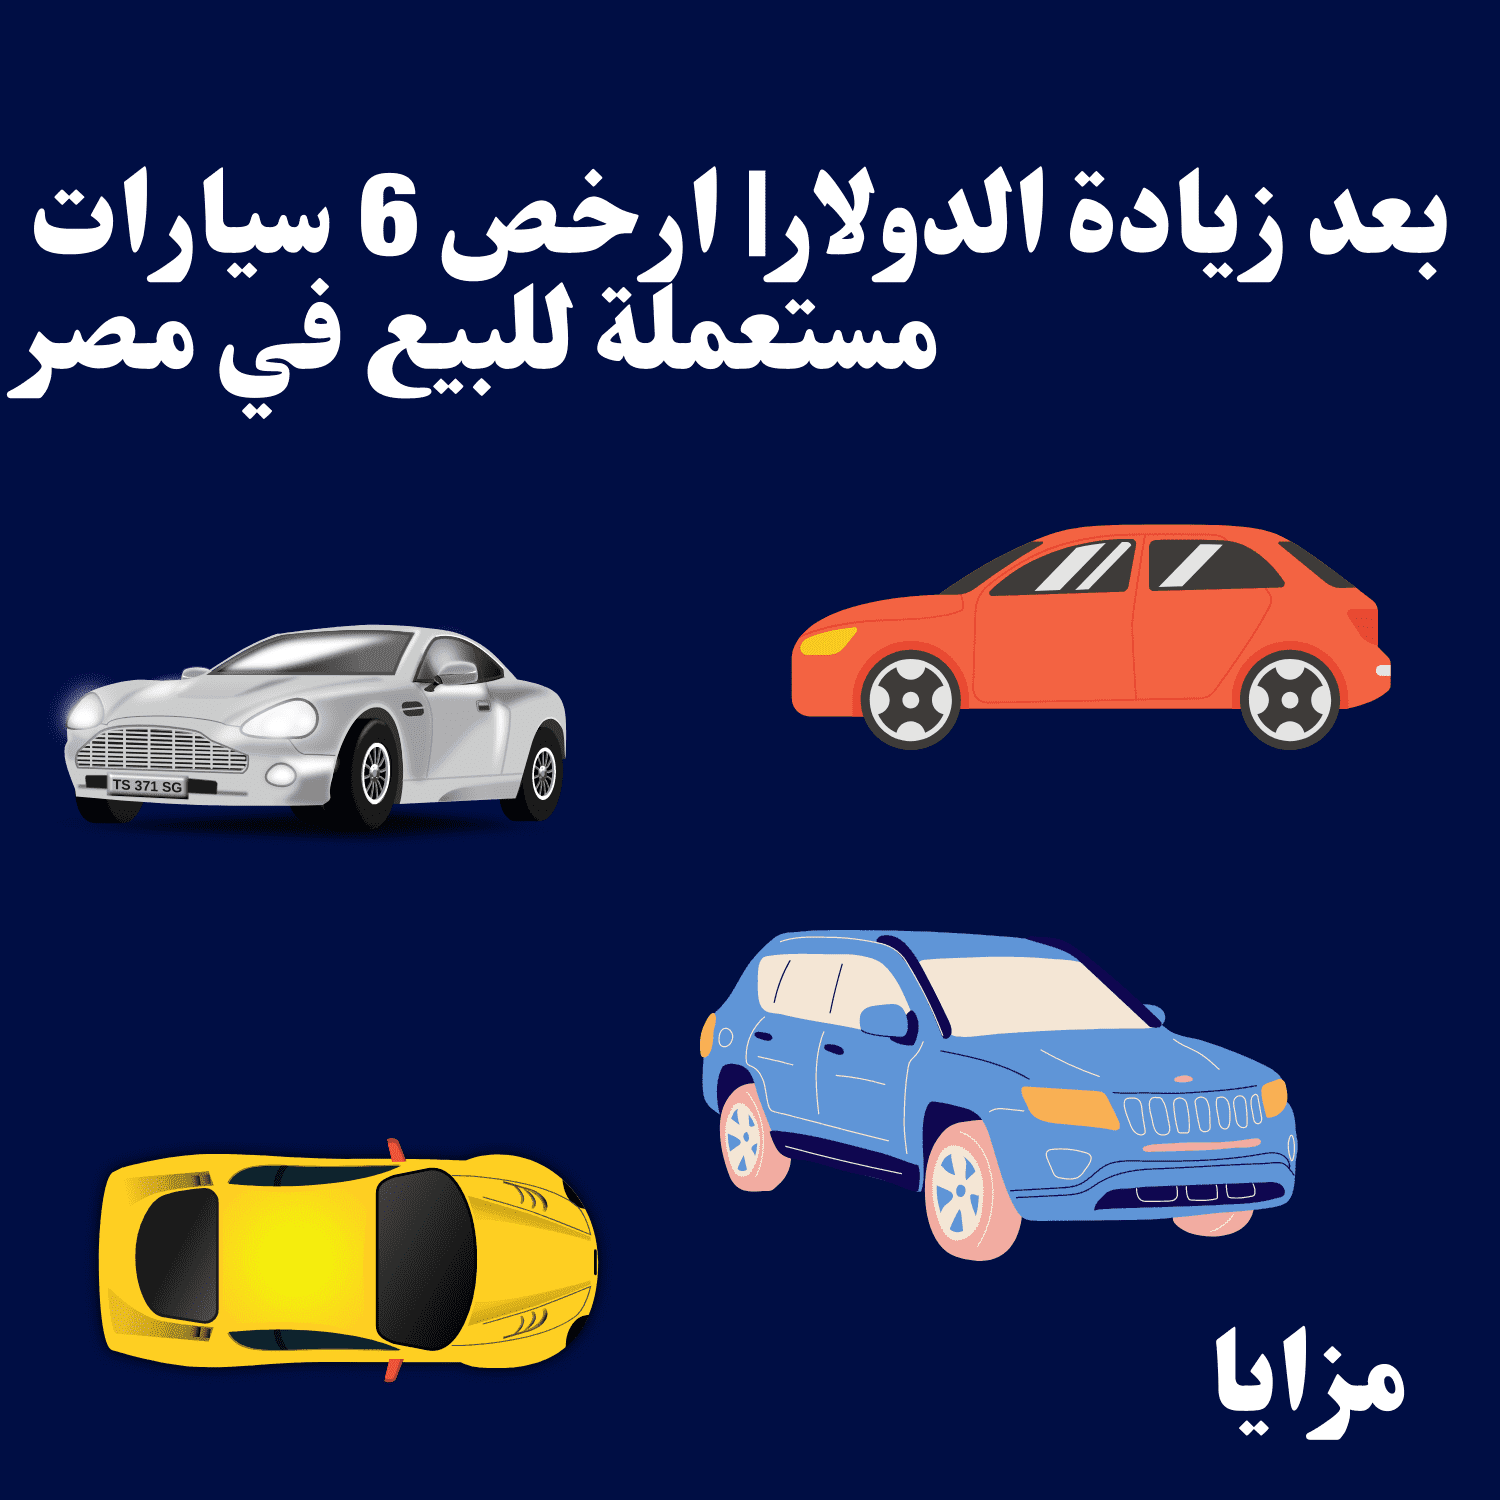 بعد زيادة الدولار ارخص 6 سيارات مستعملة للبيع في مصر